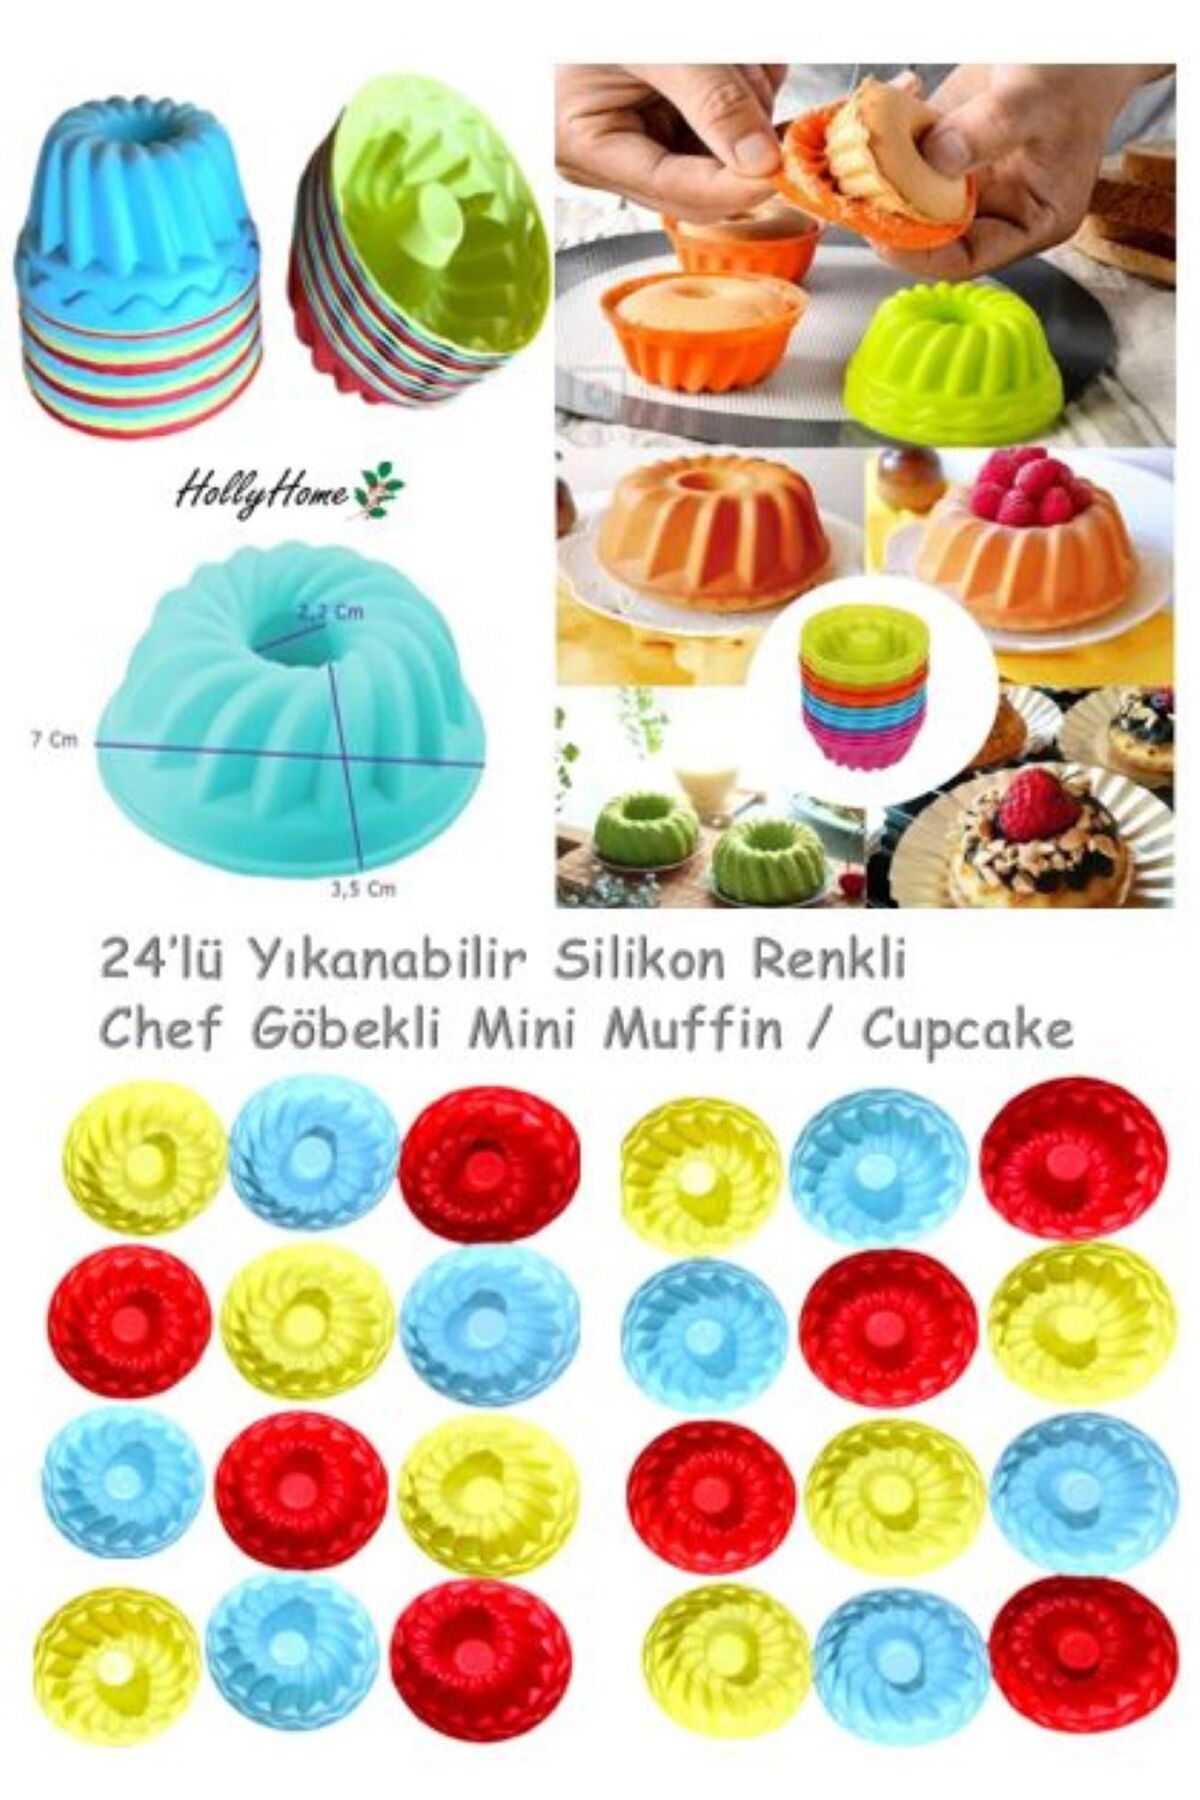 HOLLYHOME 24'lü Yıkanabilir Mini Chef Göbekli Muffin Pişirme Kalıbı, Silikon Kek, Cupcake, Hamur Işi Kap